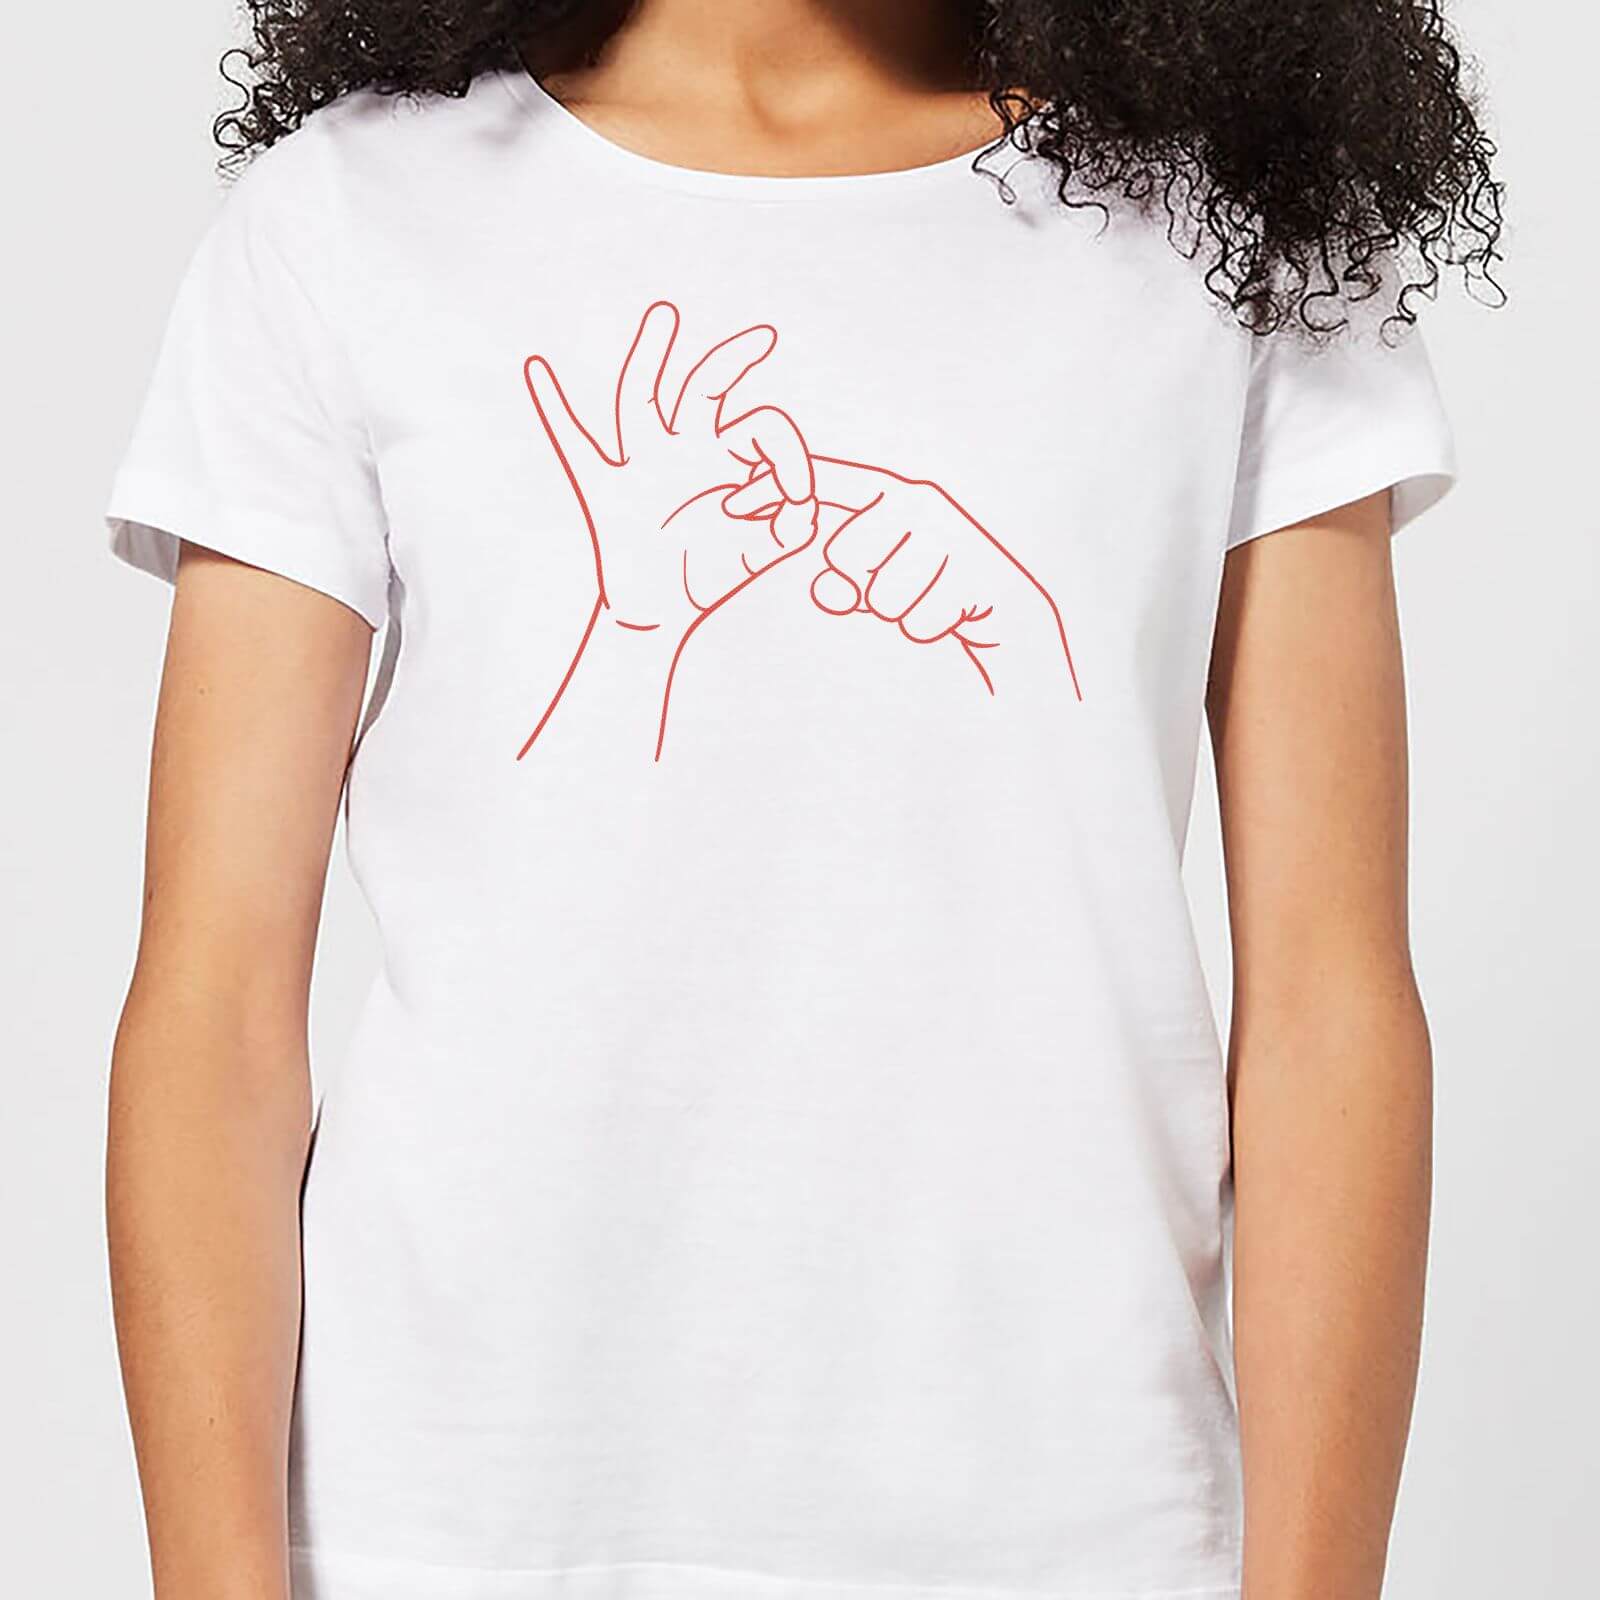 Sexy Hand Gesture Women's T-Shirt - White - S - White